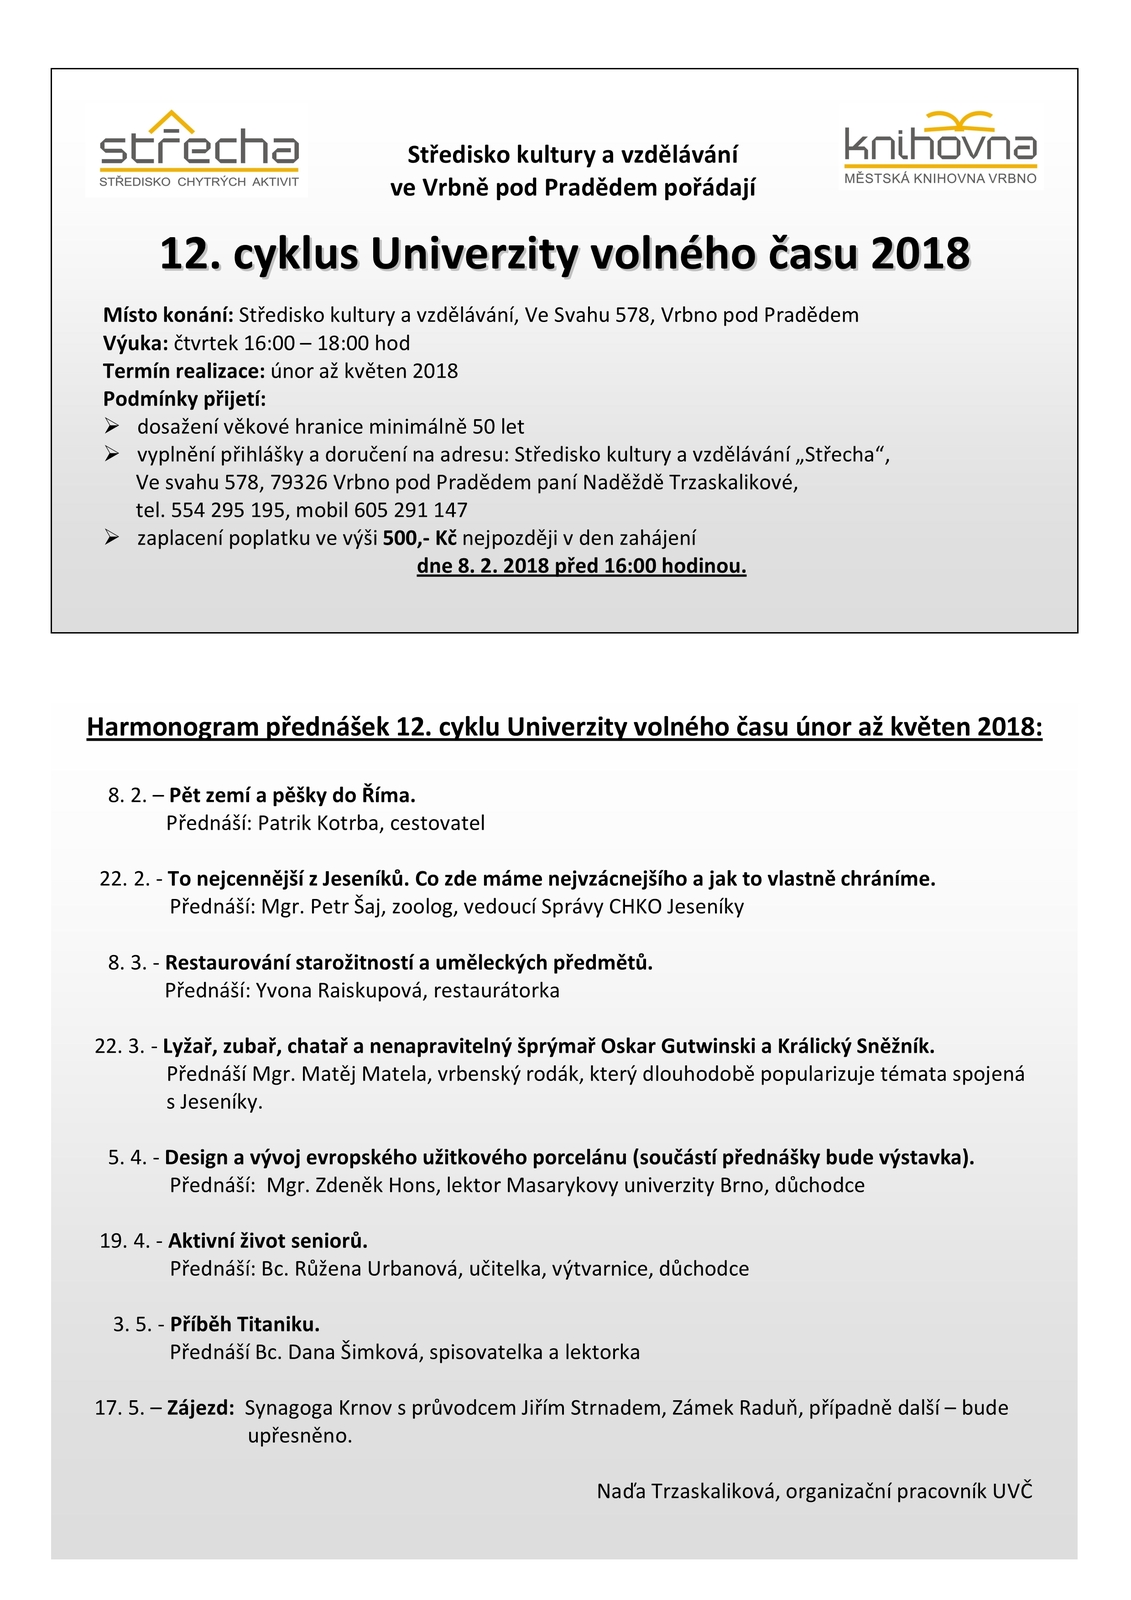 UVČ plakátek a Harmonogram přednášek 12. cyklus 2018-0001.jpeg